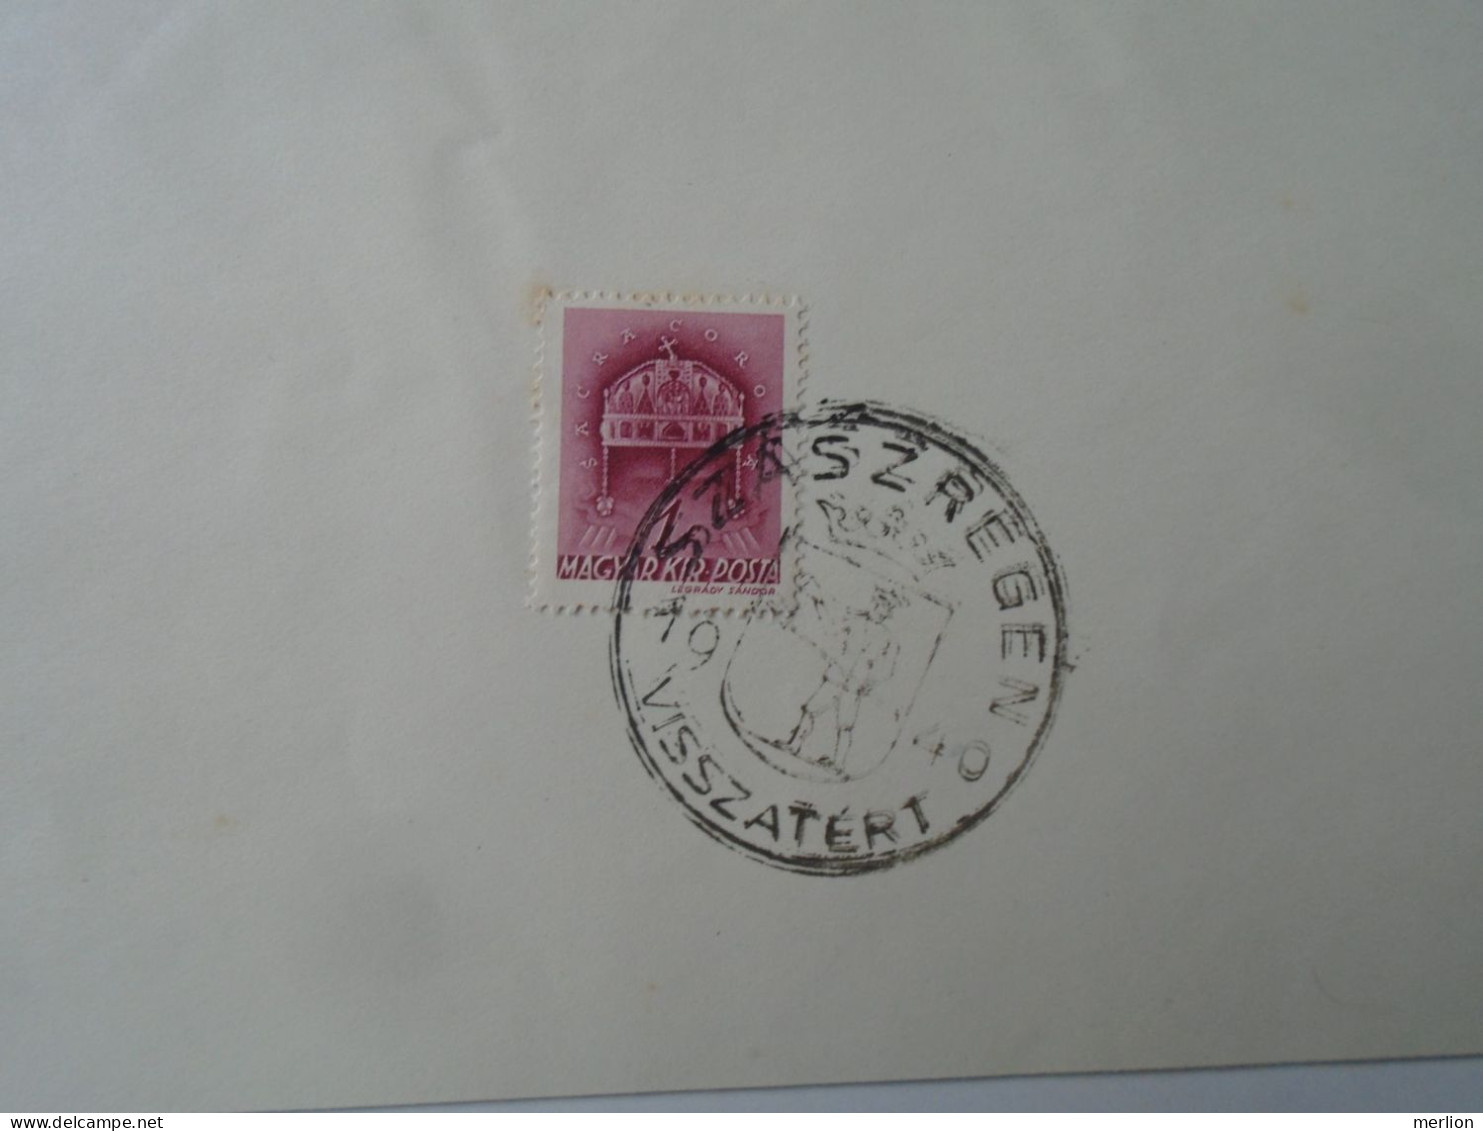 ZA451.18 Hungary  - Szászrégen, Szamosújvár, Marosvásárhely, Kolozsvár Visszatért -Commemorative Postmark 1940 - Marcophilie